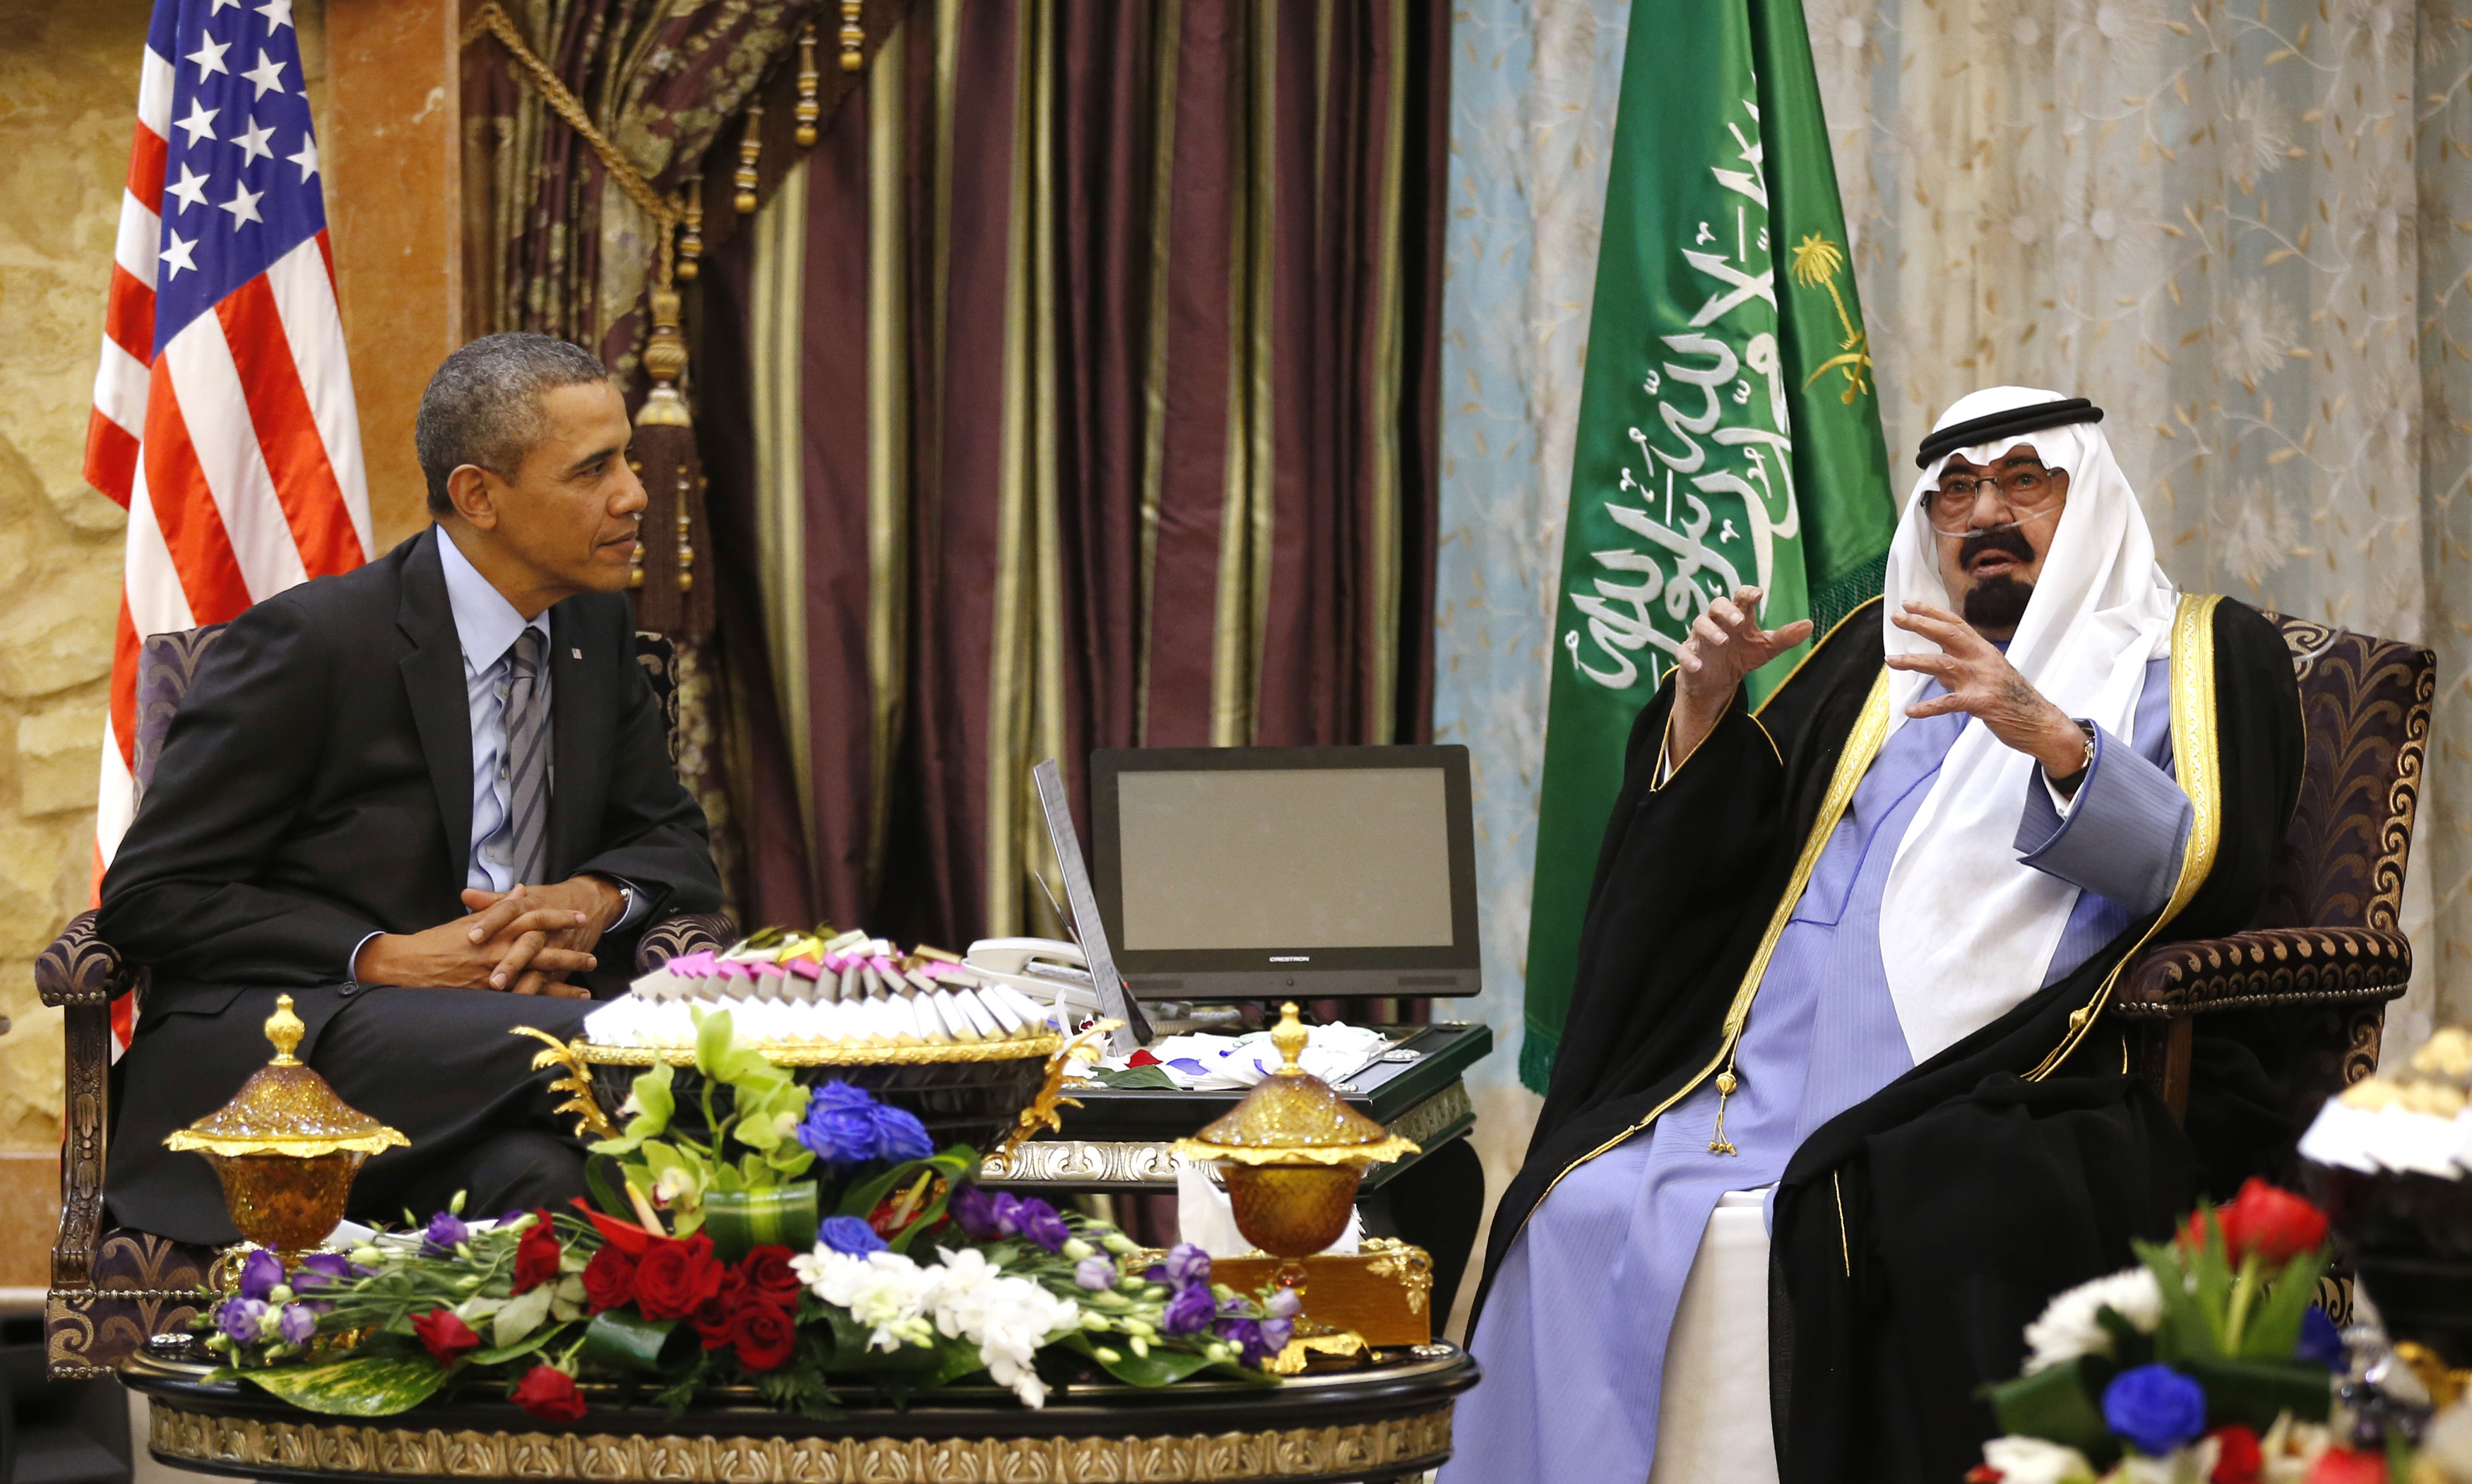 President Obama meets King Abdullah in Saudi Arabia